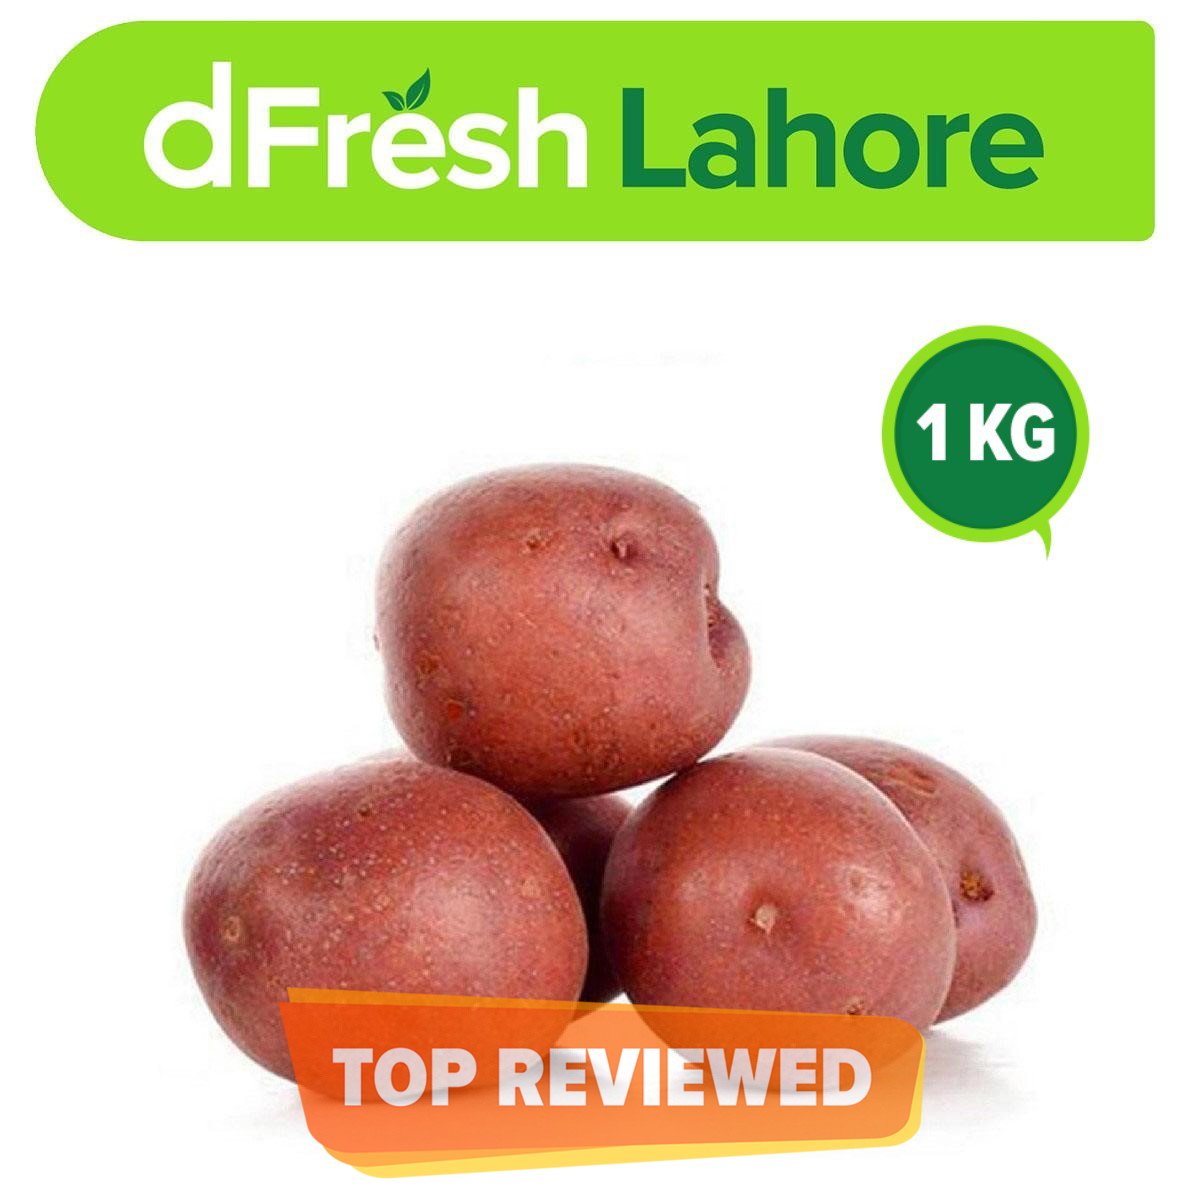 Dfresh: Premium Potatoes (red) (1 Kg)